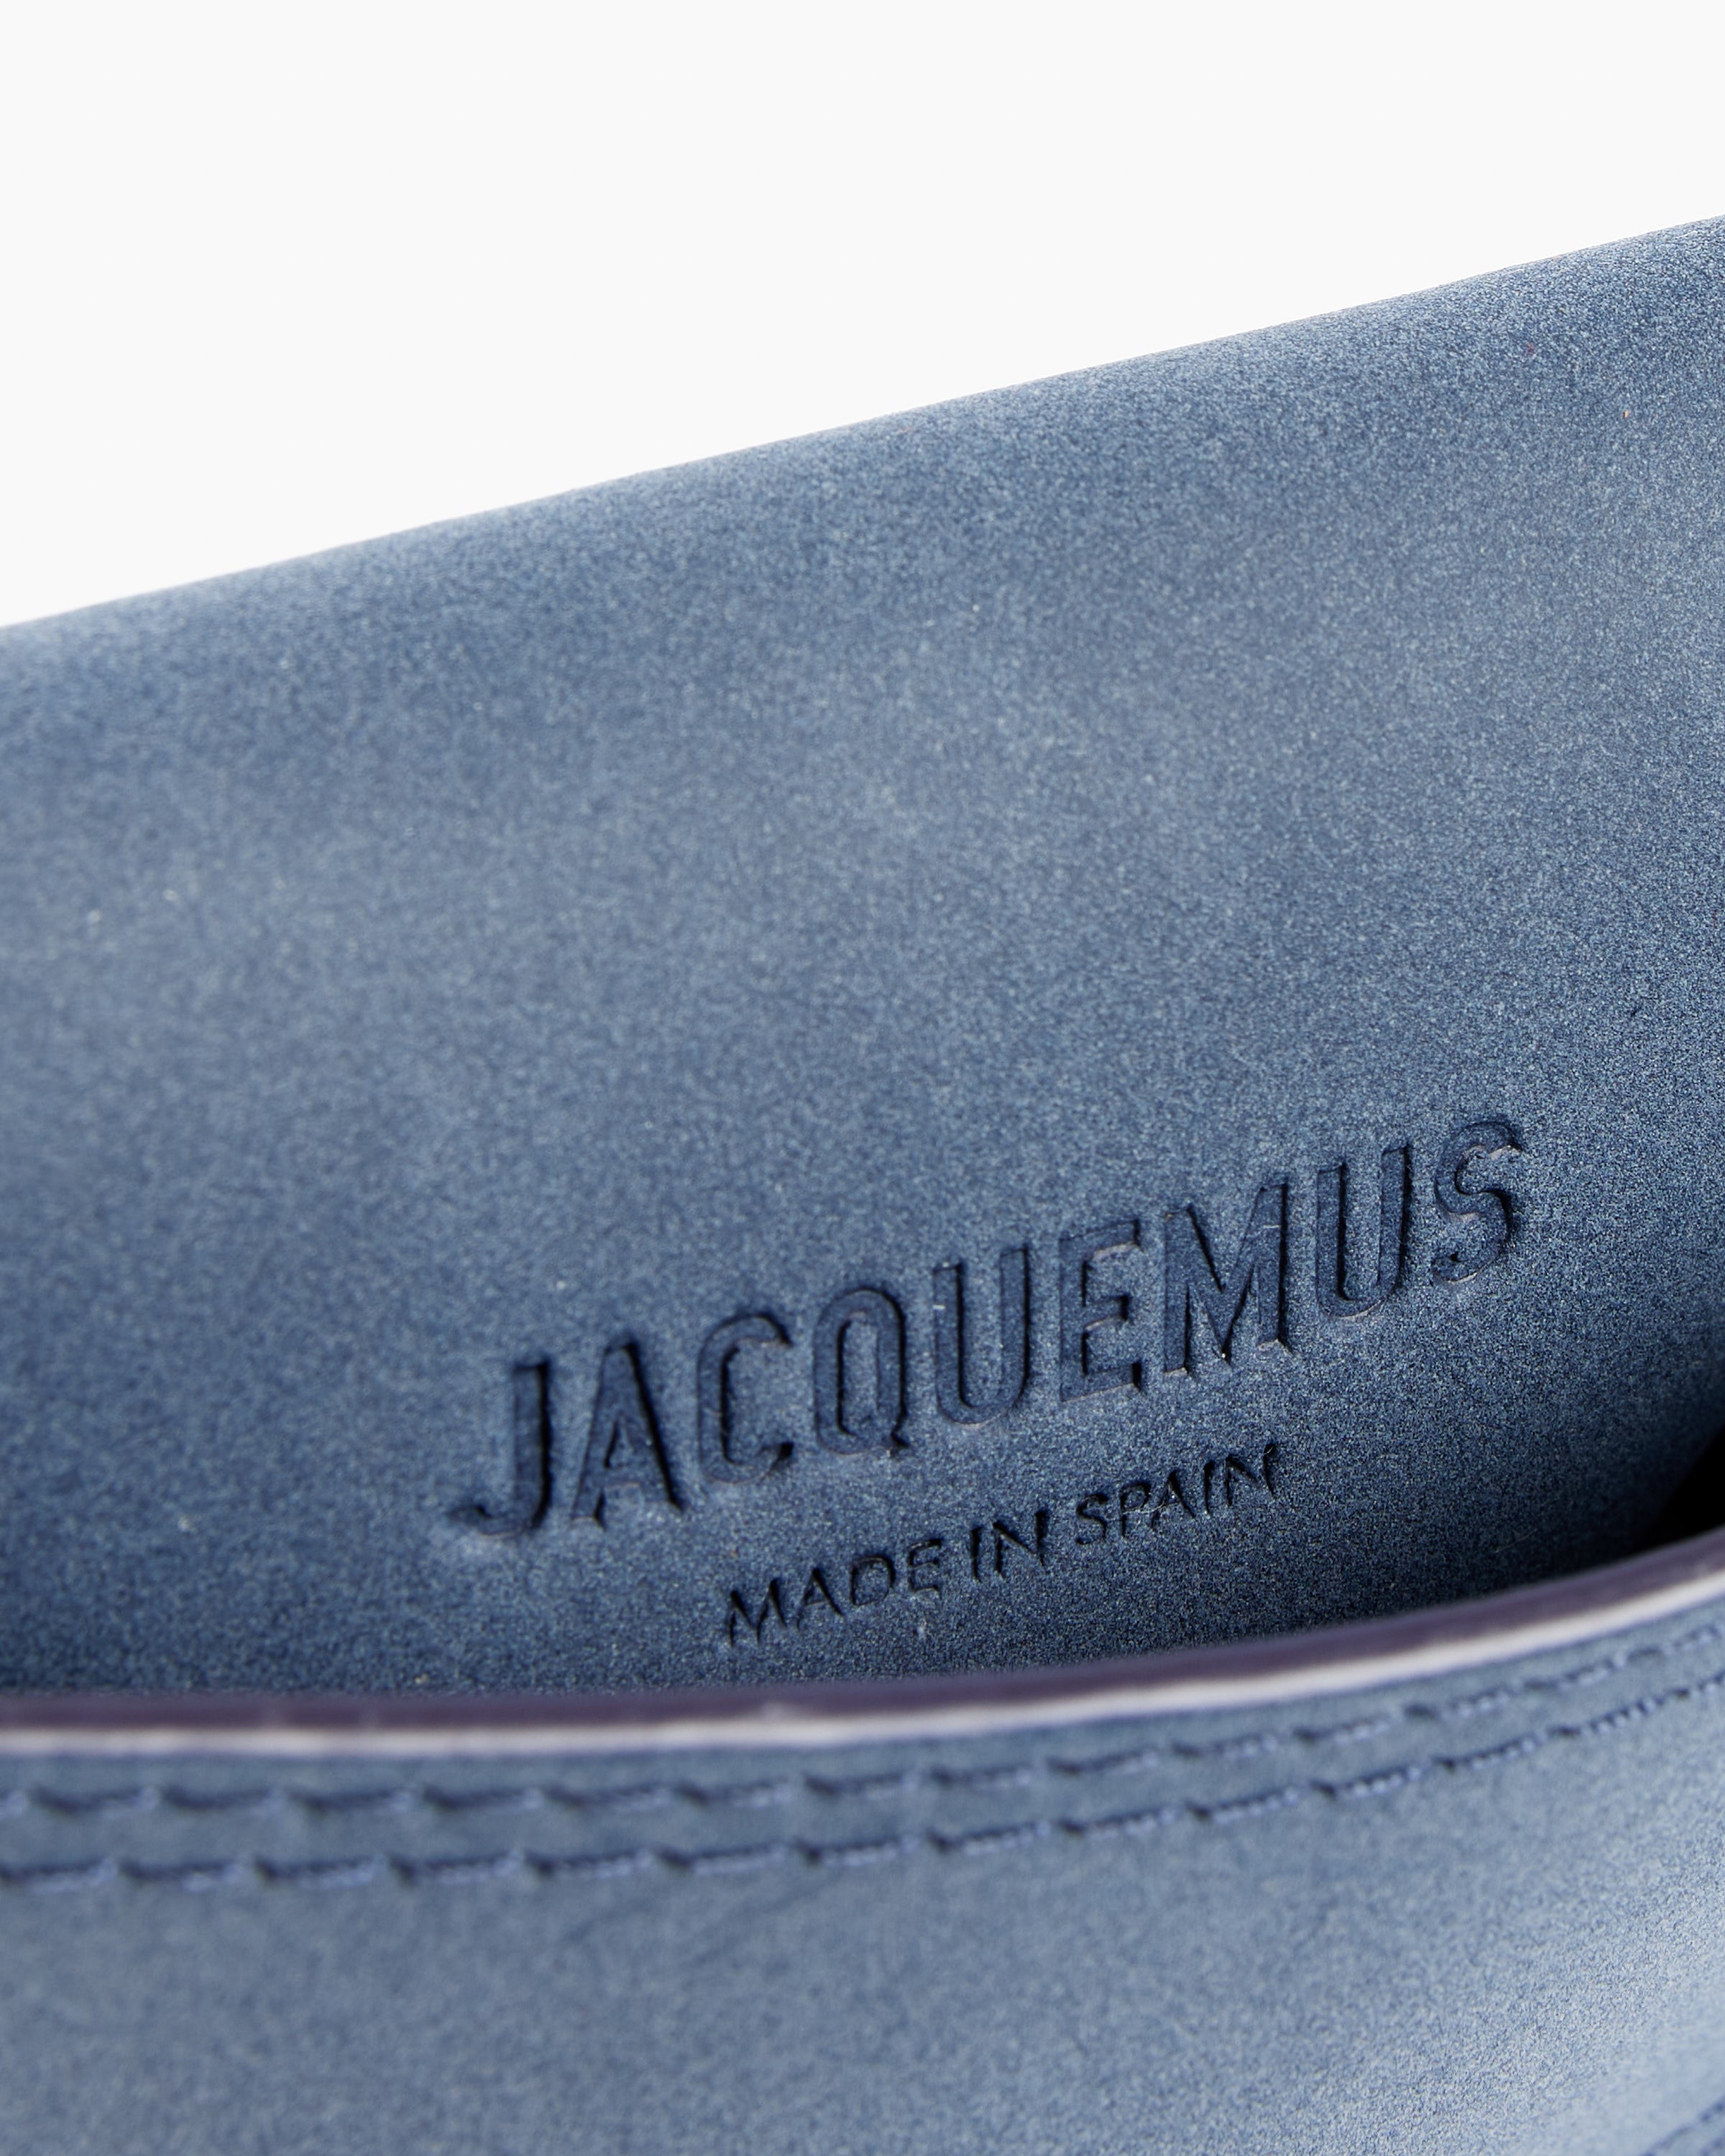 Jacquemus, Bags, Black Jacquemus Le Porte Azur Bag Cardholder Wallet